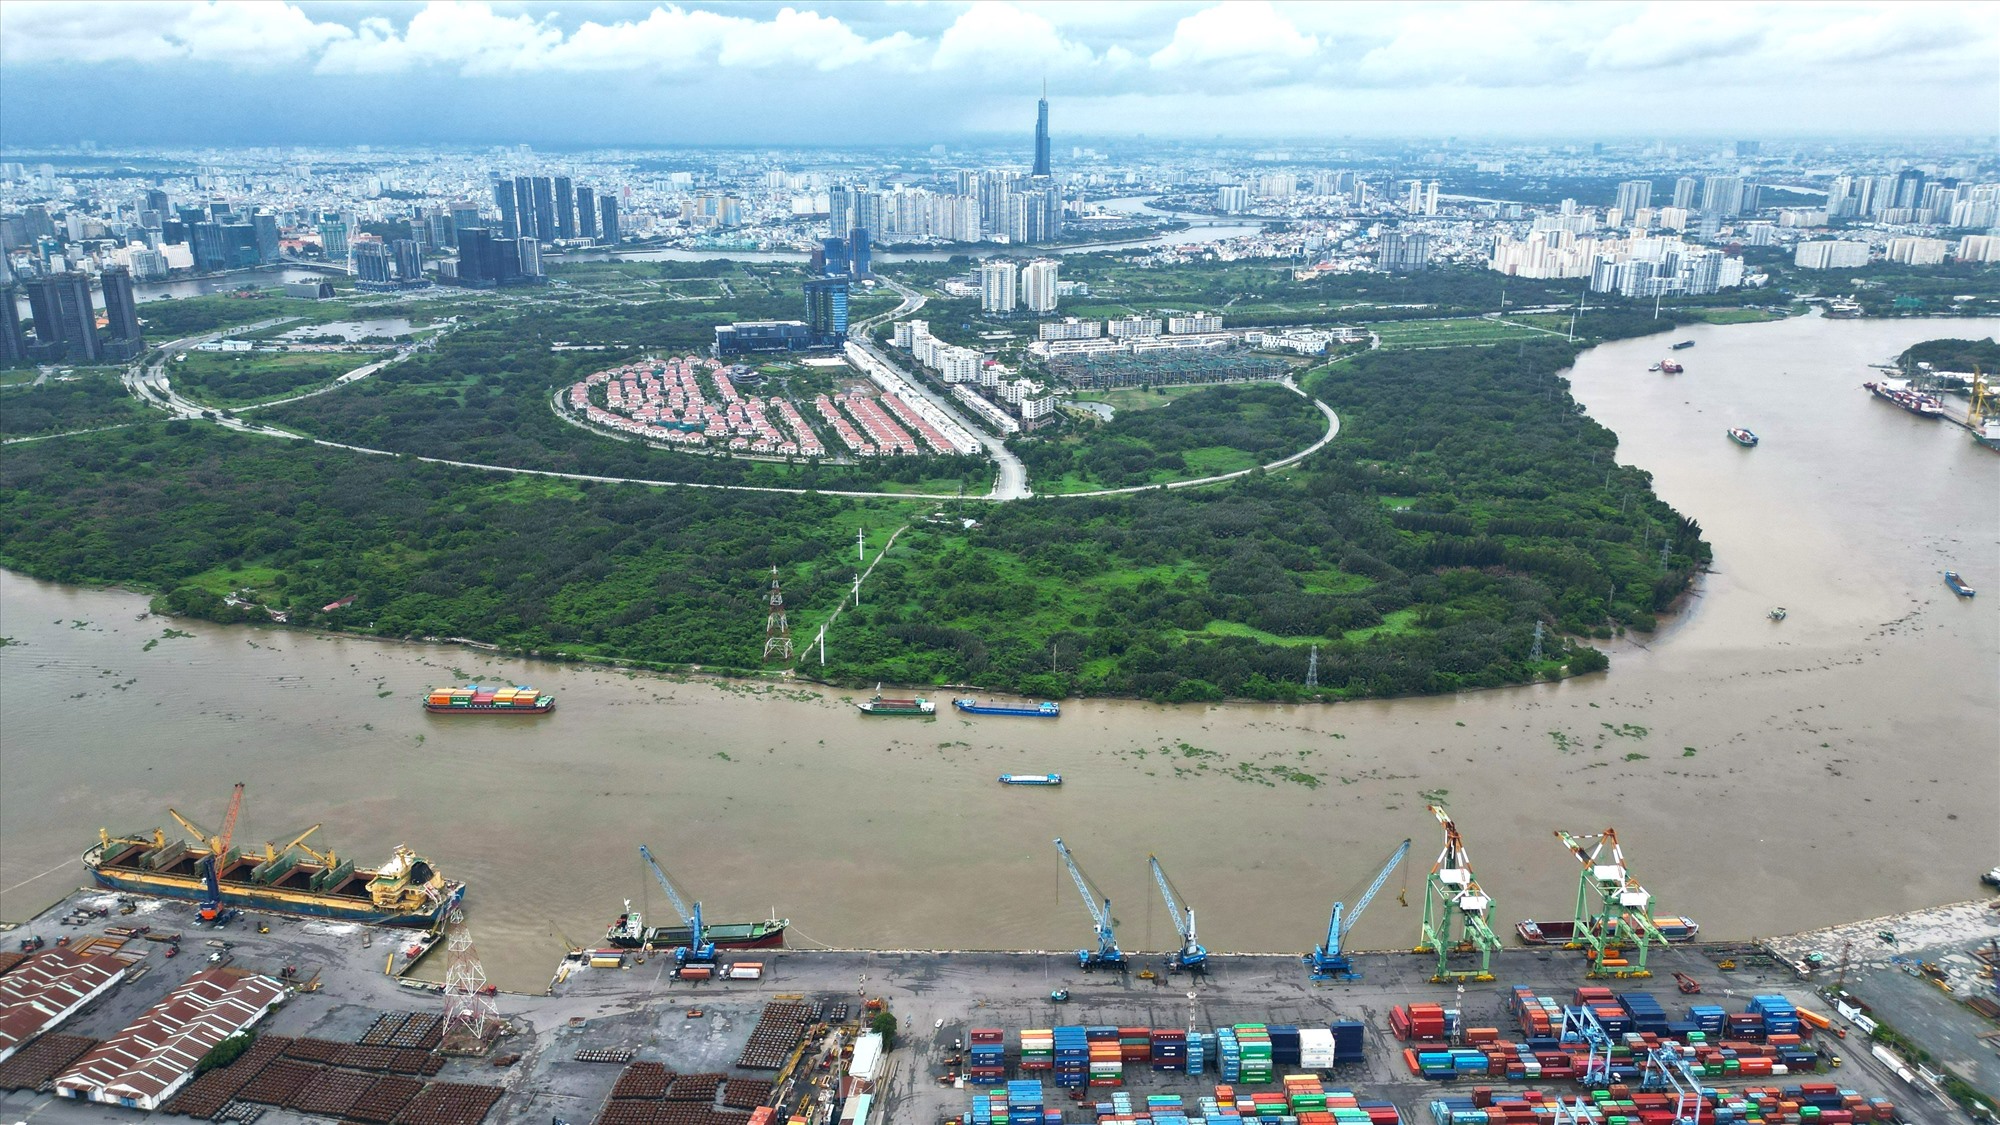  Diện tích khu lâm viên chạy dọc sông Sài Gòn với một mảng xanh đặc thù. Đối diện bên kia sông với trung tâm Quận 1, khu dân cư đông đúc, cảng và khu chế xuất Tân Thuận thuộc địa bàn quận 4,7.  